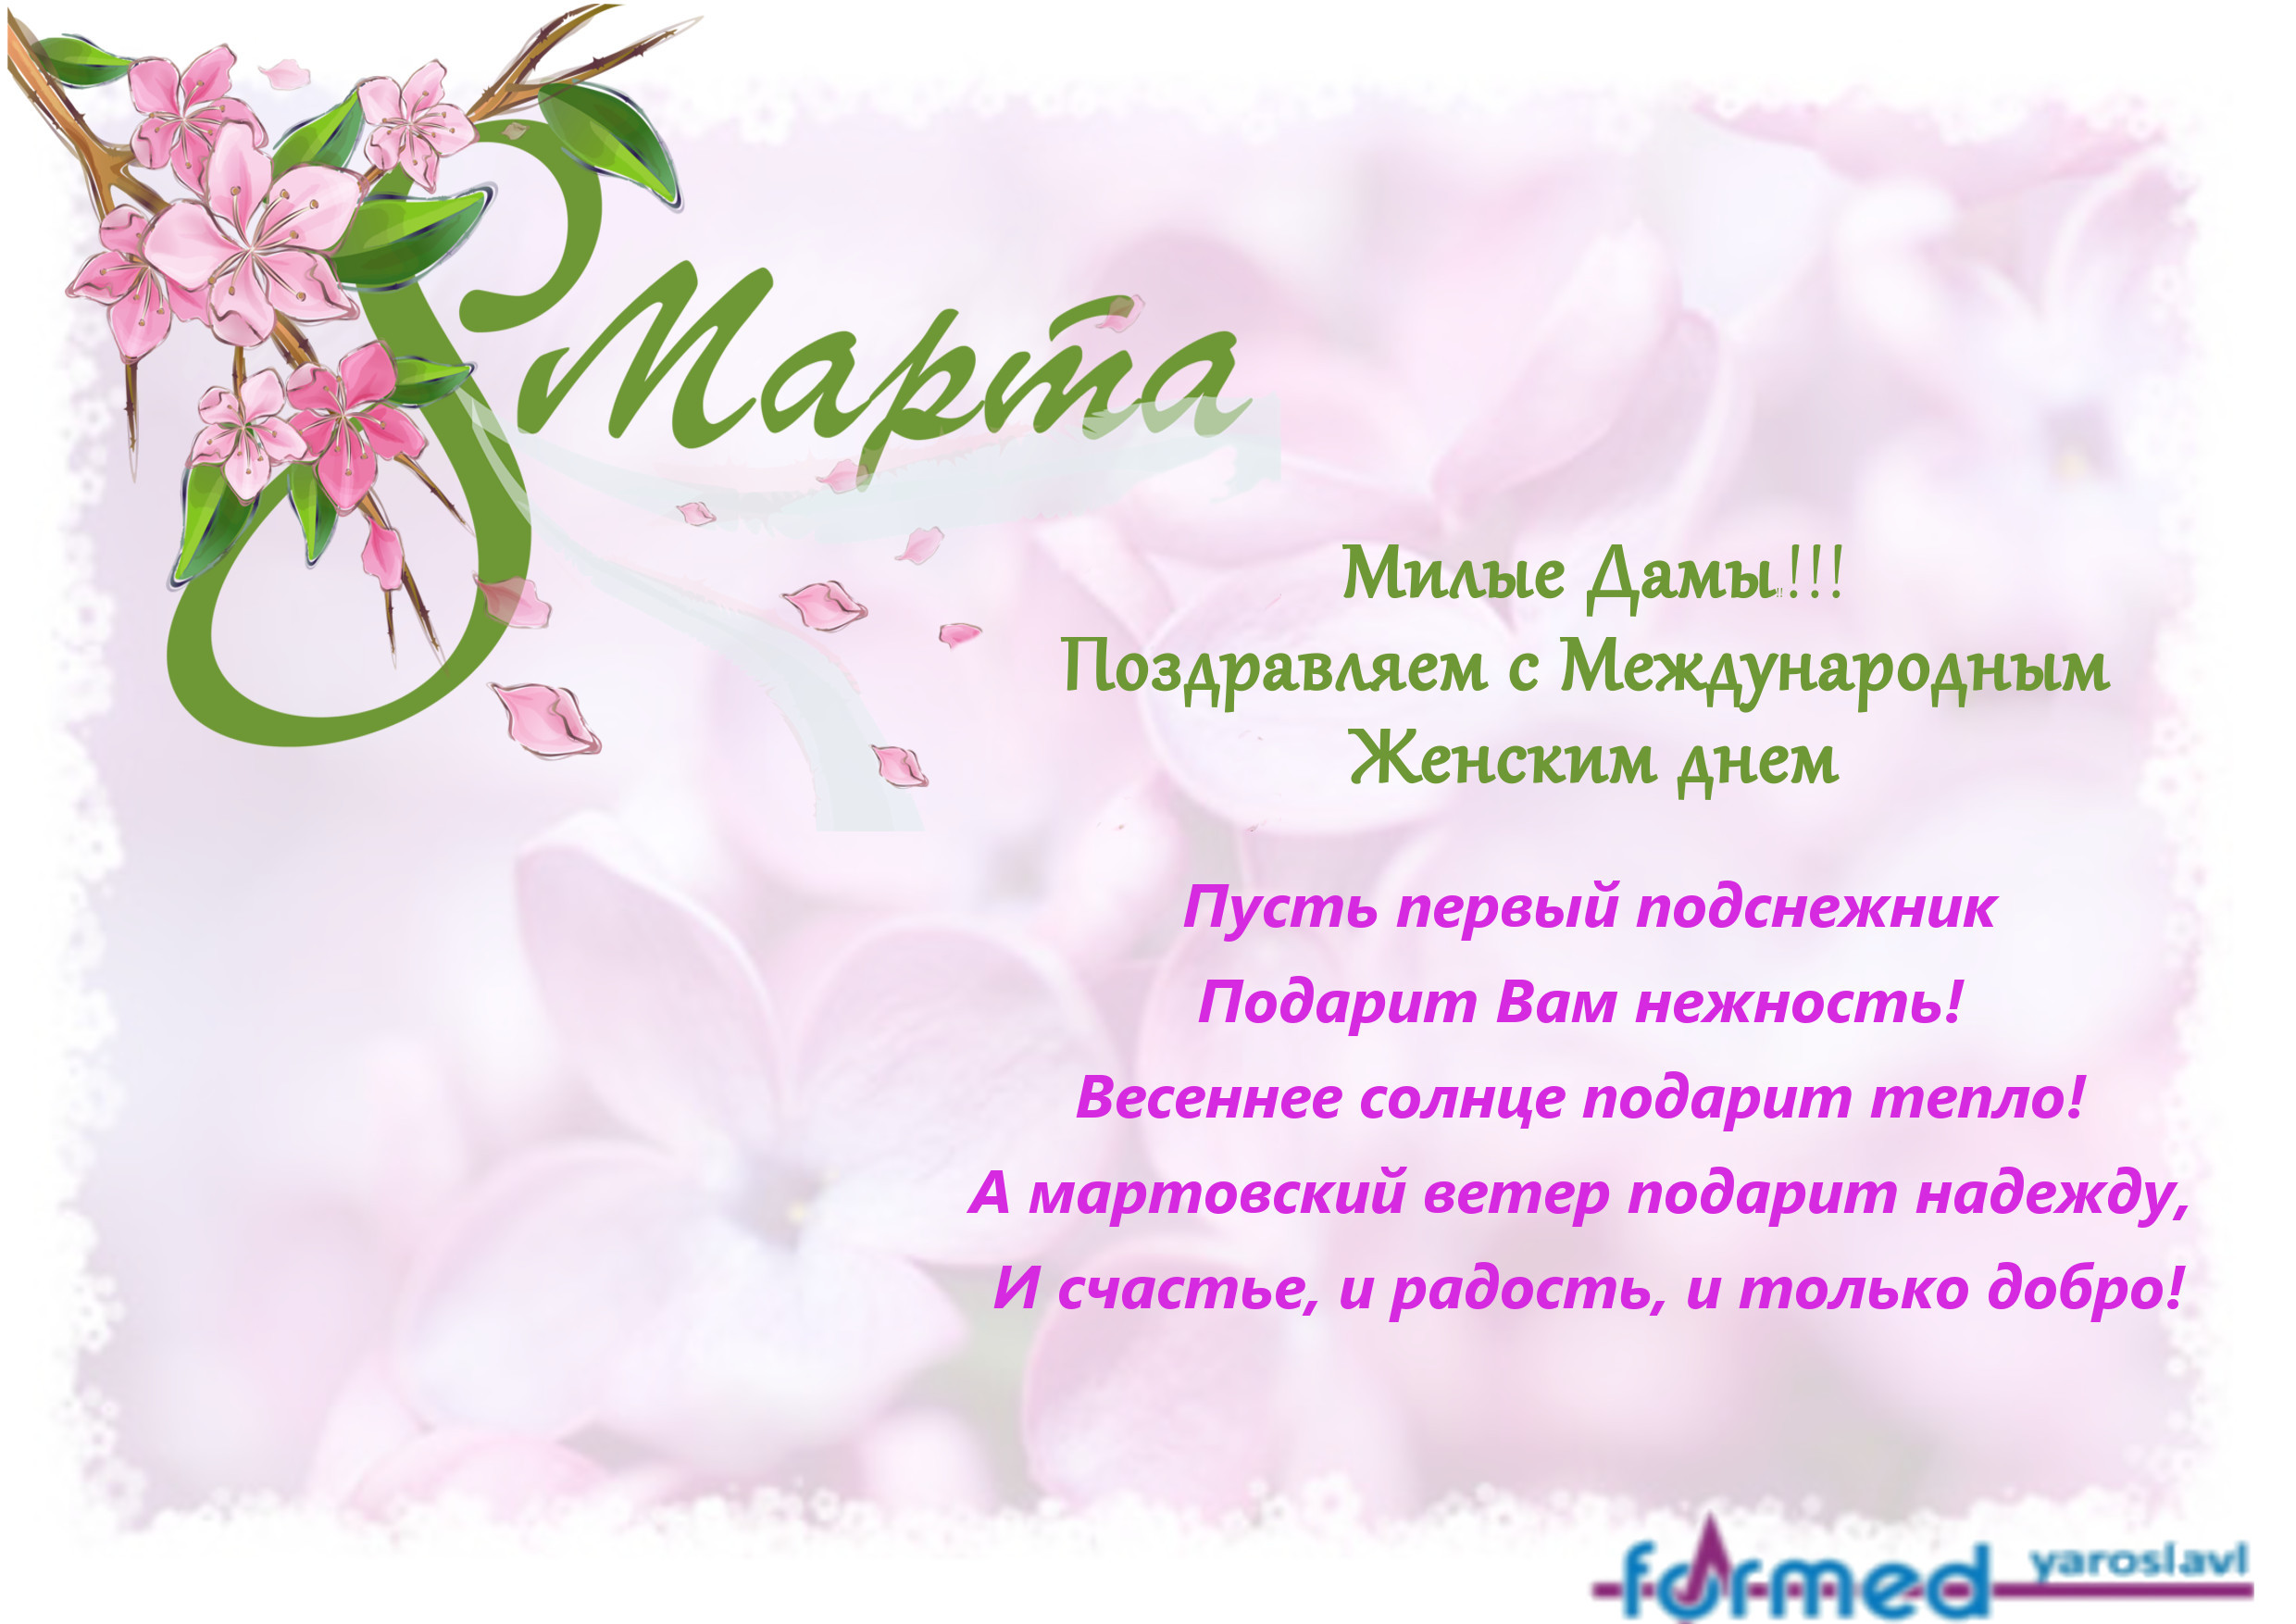 Милые дамы, ООО "Формед-Ярославль" поздравляет с 8 марта